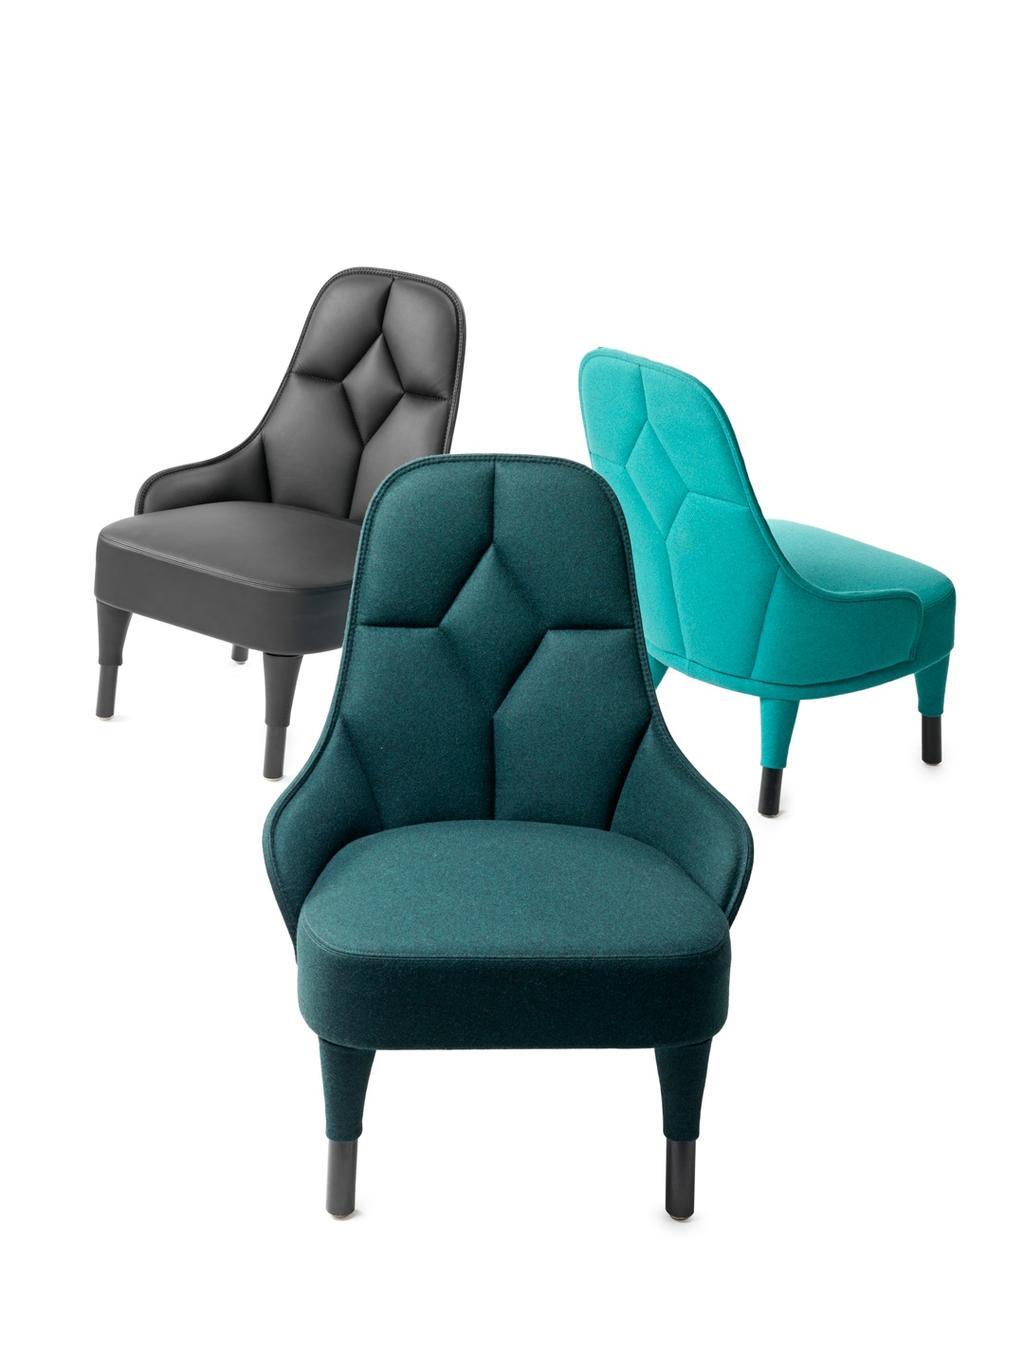 Emma Lounge Chair by Fredrik